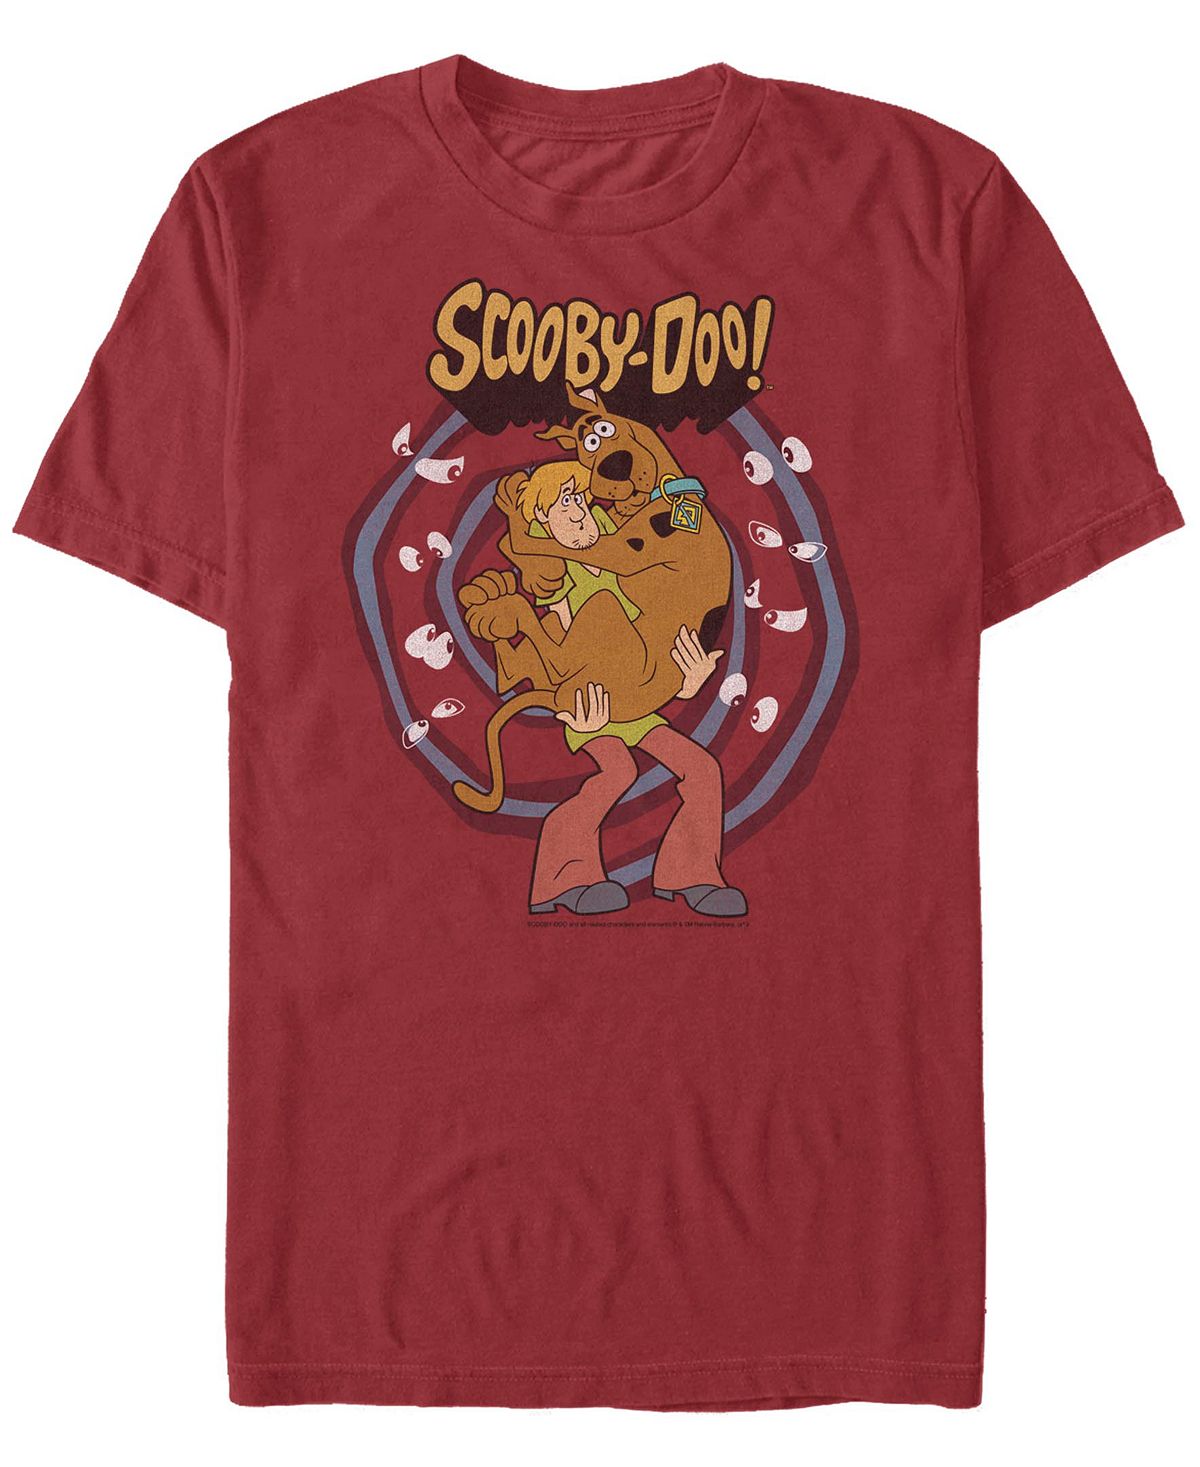 Мужская футболка с коротким рукавом scooby doo rover here Fifth Sun мужская футболка с короткими рукавами rainbow monster box up scooby doo fifth sun черный